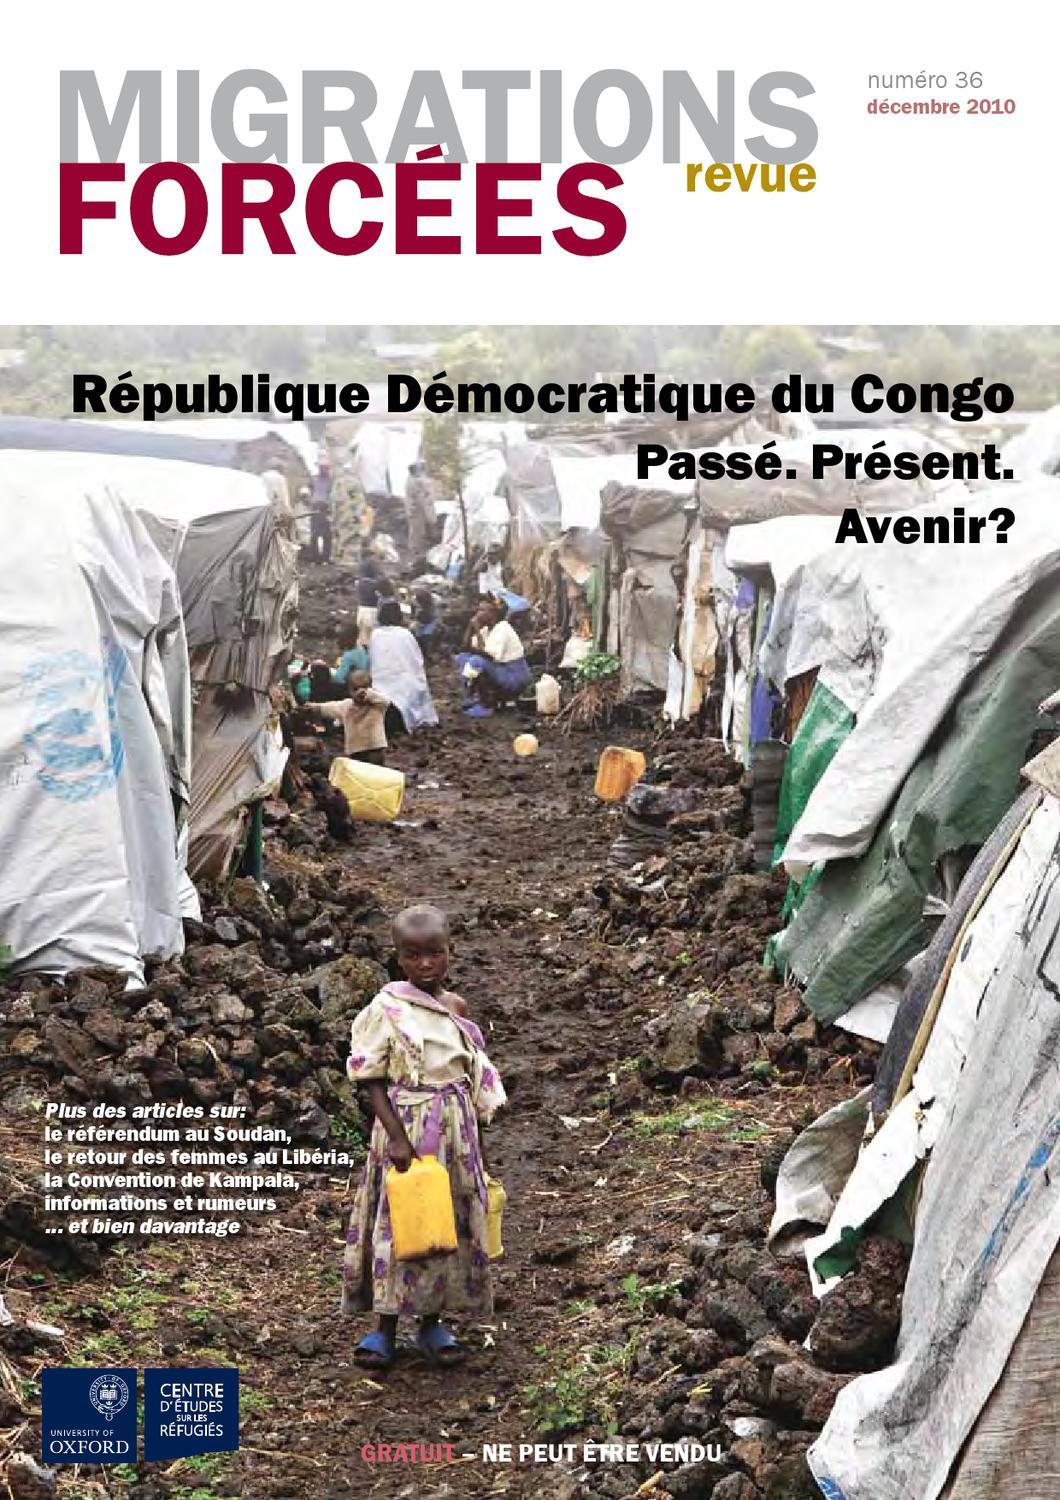 L'OMS annonce un plan de « transformation profonde » à la suite d'allégations d'abus sexuels en RDC | ONU Info 